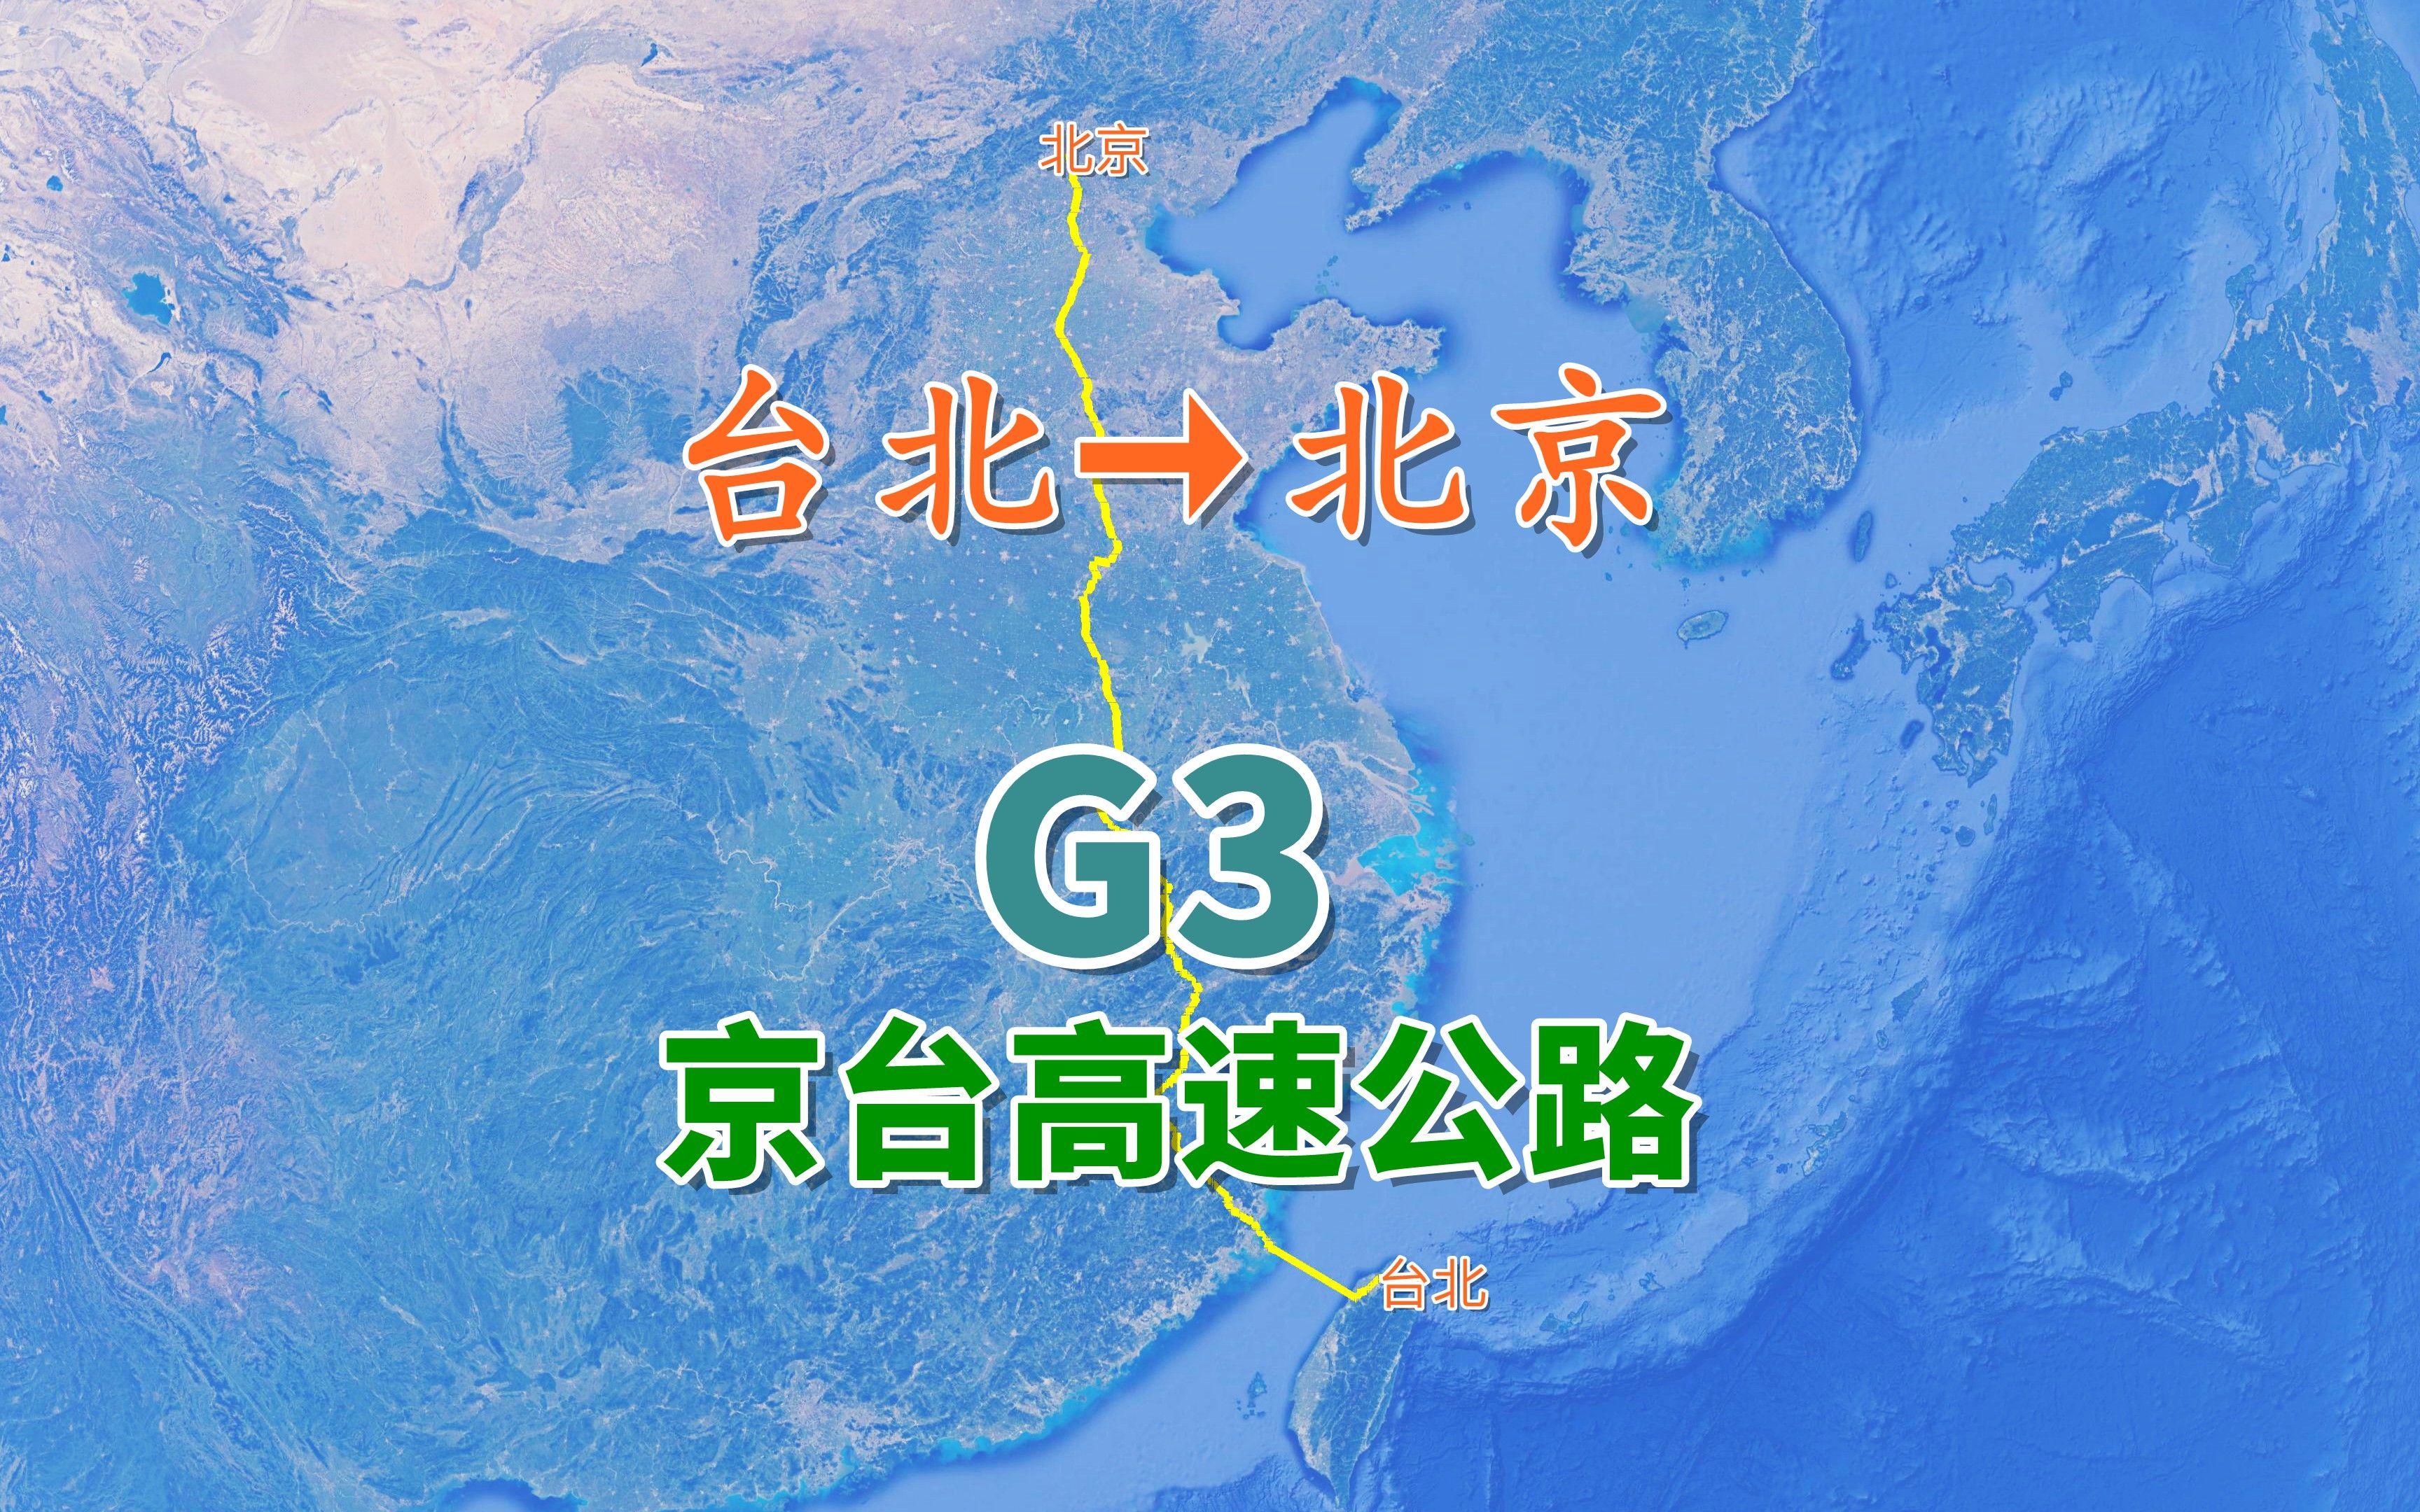 京台高速公路g3,模拟由福州平潭向北京方向行进,行程约1979公里